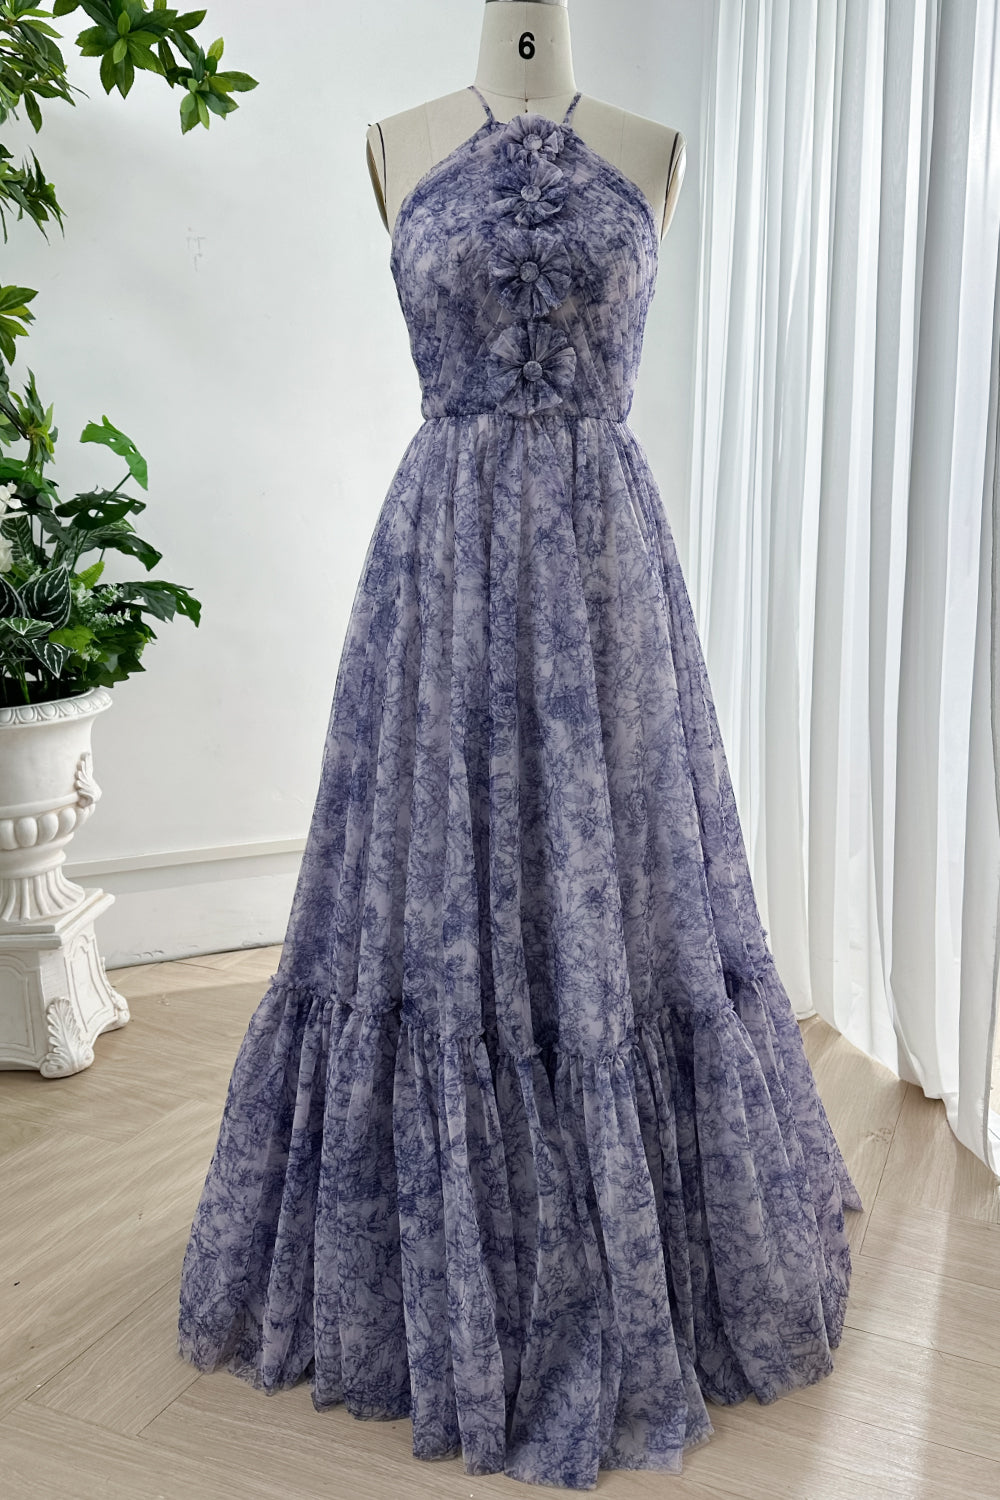 Halter Corset Blue White Print Tulle Dress with Handmade Flower